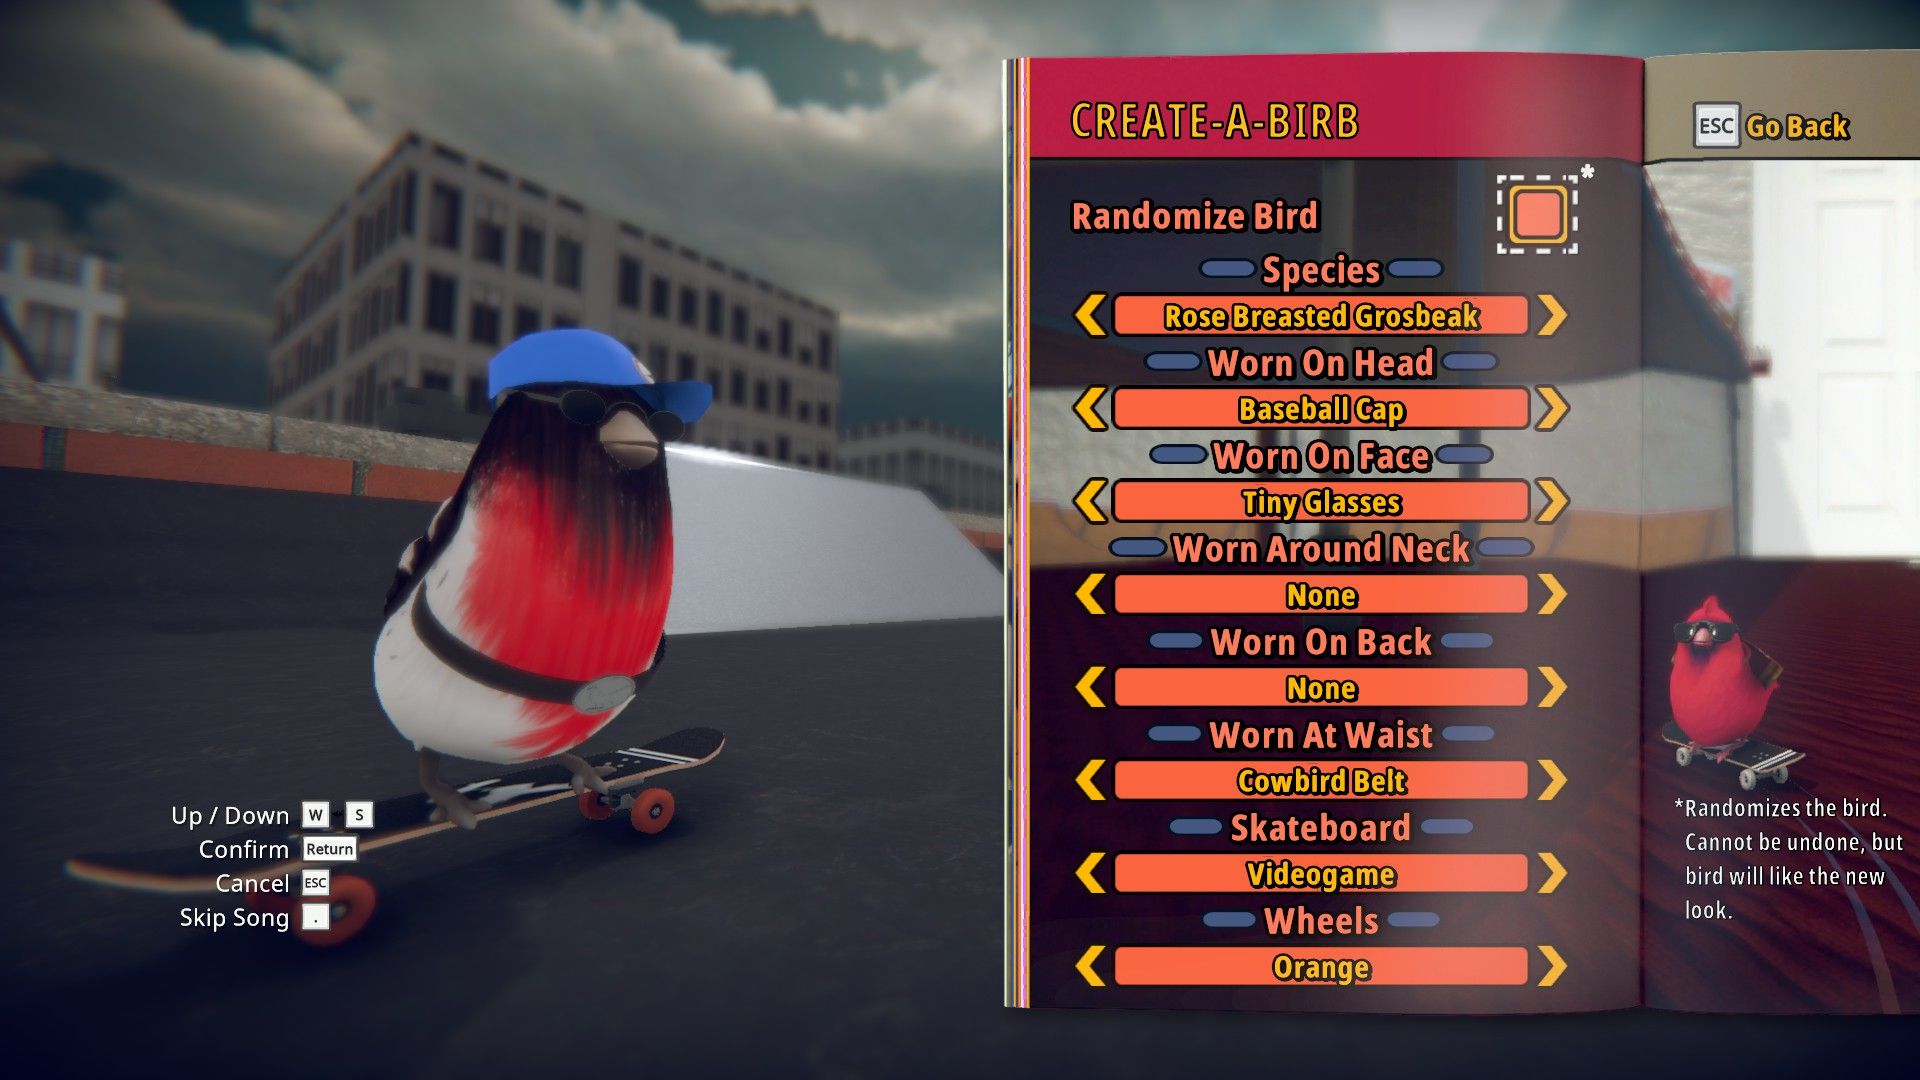 The create-a-birb menu screen in Skatebird